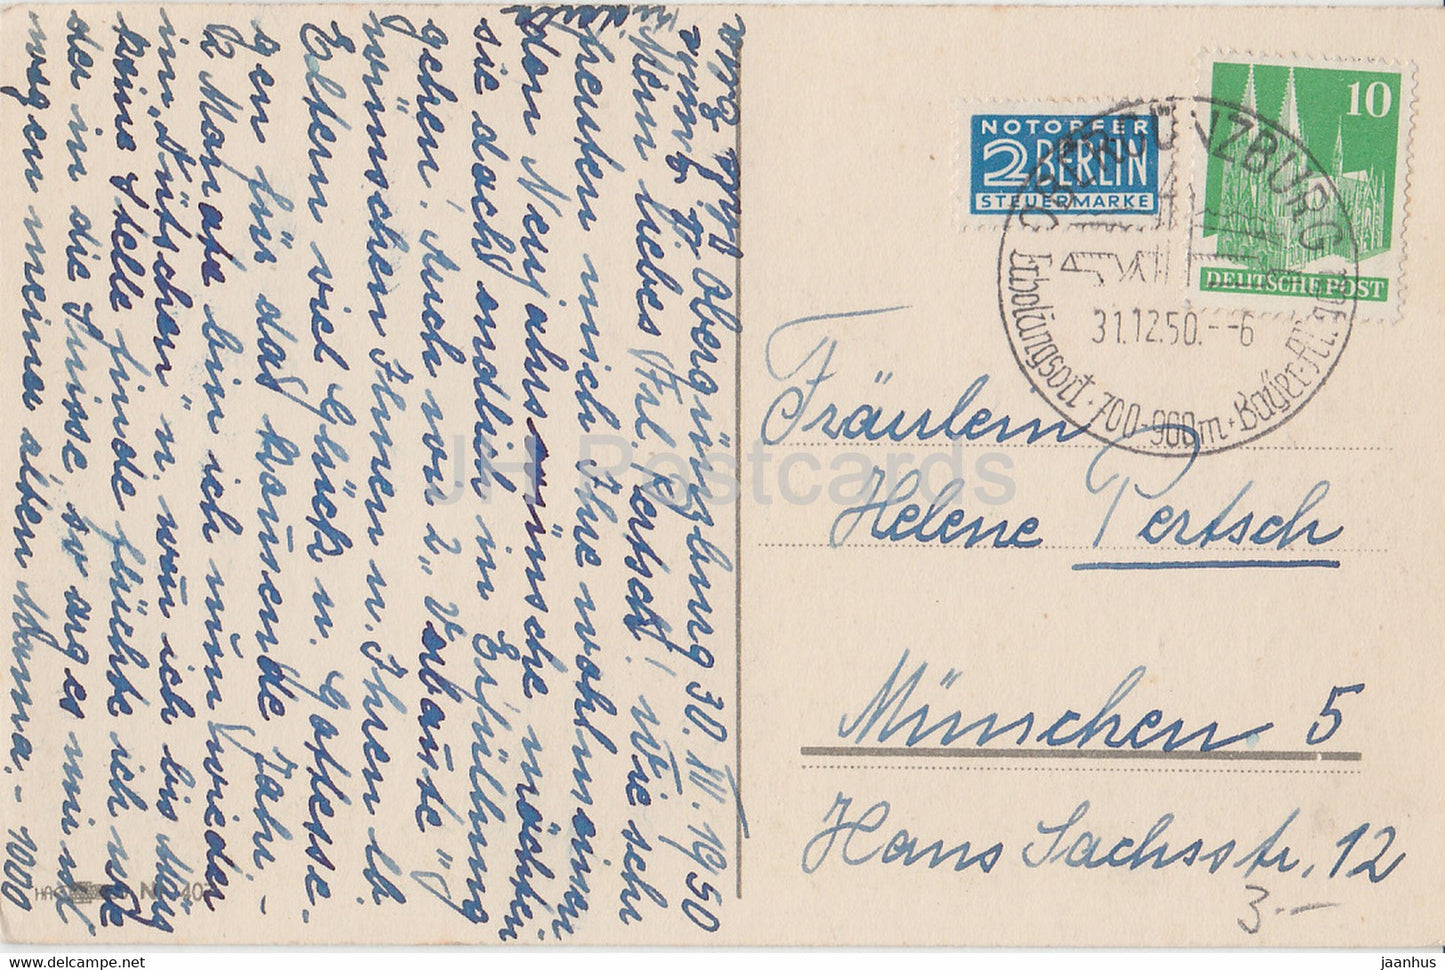 Neujahrsgrußkarte - Herzliche Neujahrsgrusse - Tannenzapfen - alte Postkarte - 1950 - Deutschland - gebraucht